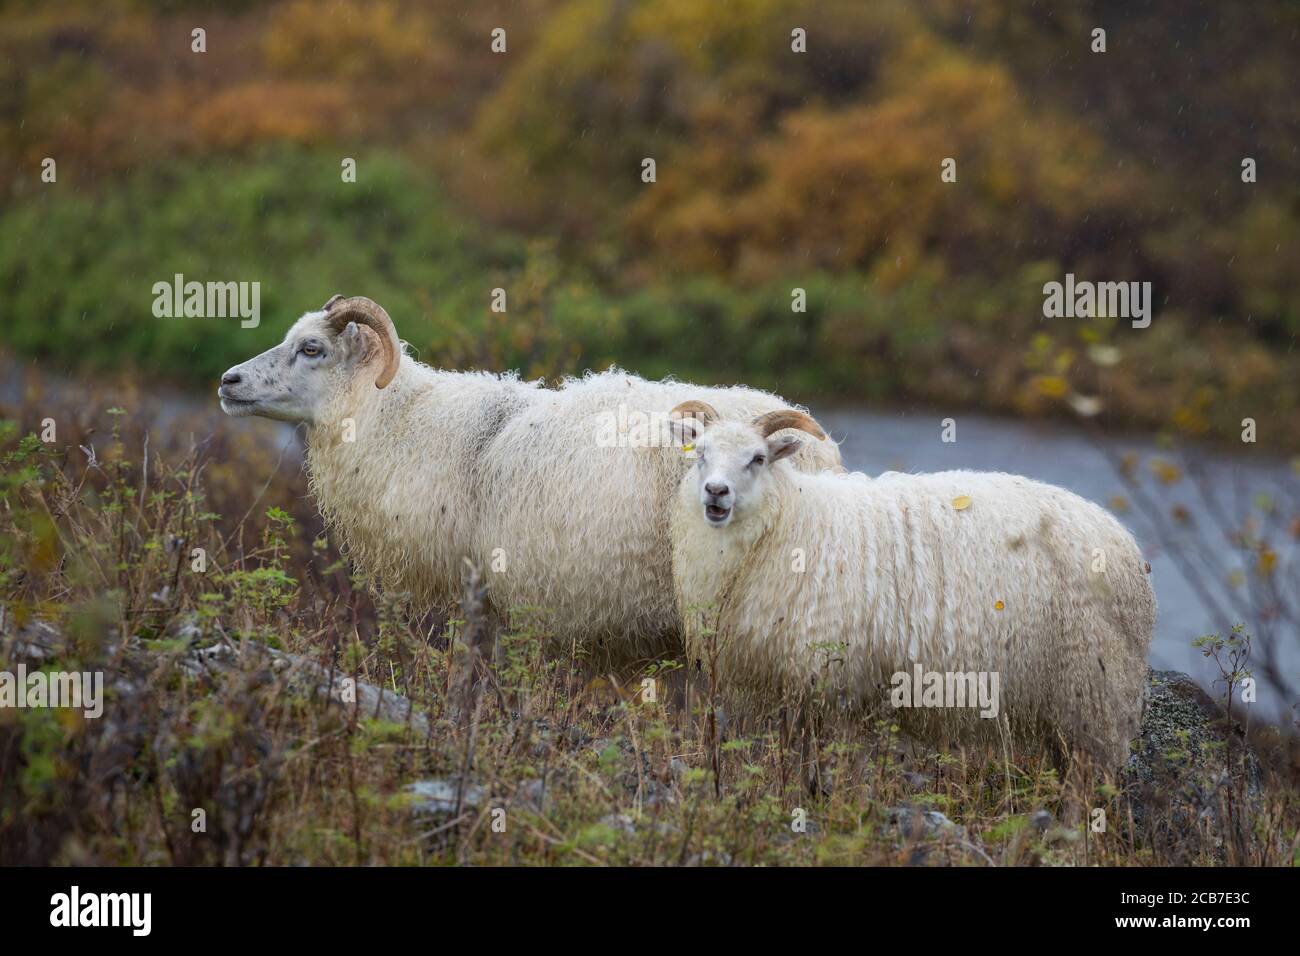 Islandschaf, Islandschafe, Island-Schaf, Island-Schafe, Schafe auf Island, Schafrasse, Icelandic sheep, Iceland Stock Photo